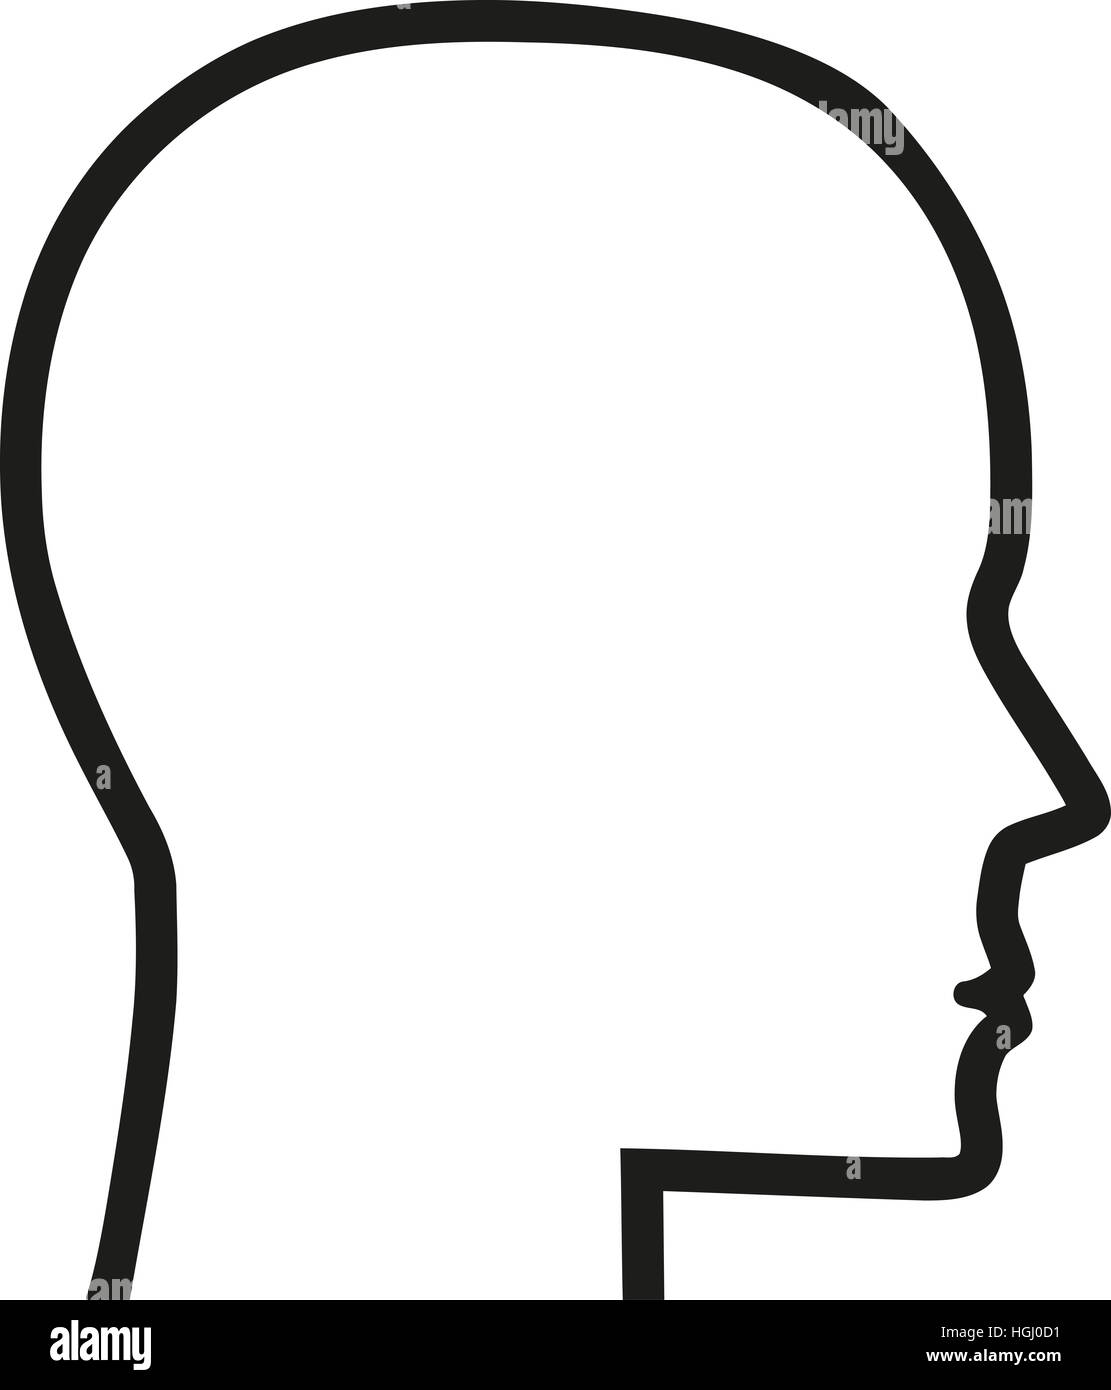 Human head contour icon Stock Photo